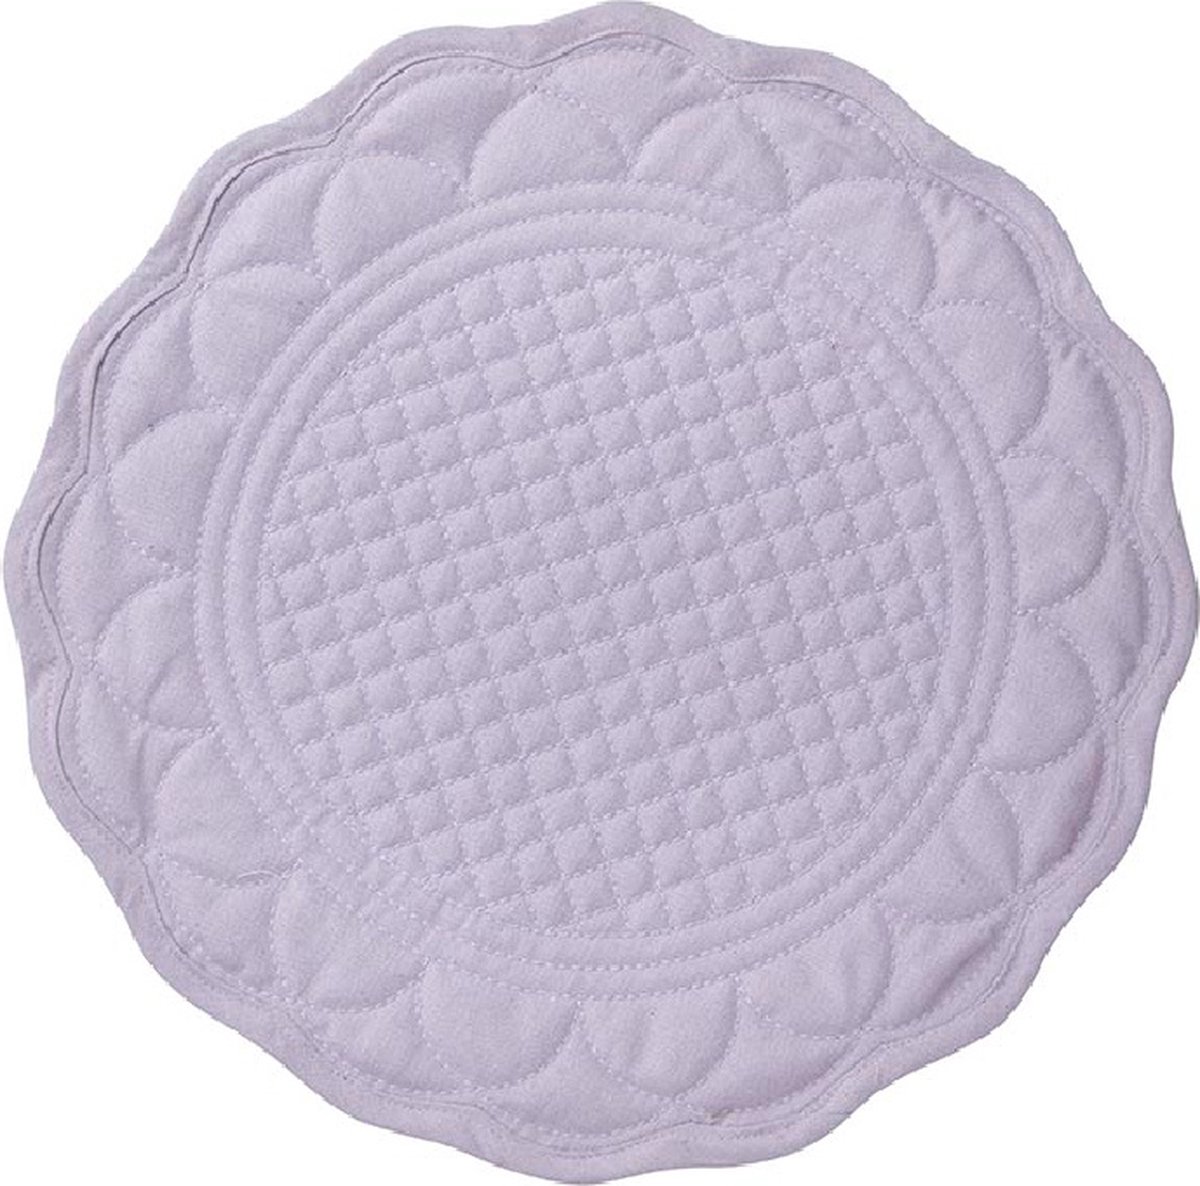 Bungalow ronde, katoen-linnen doorgestikte lila placemat Mirra, set van 4 stuks